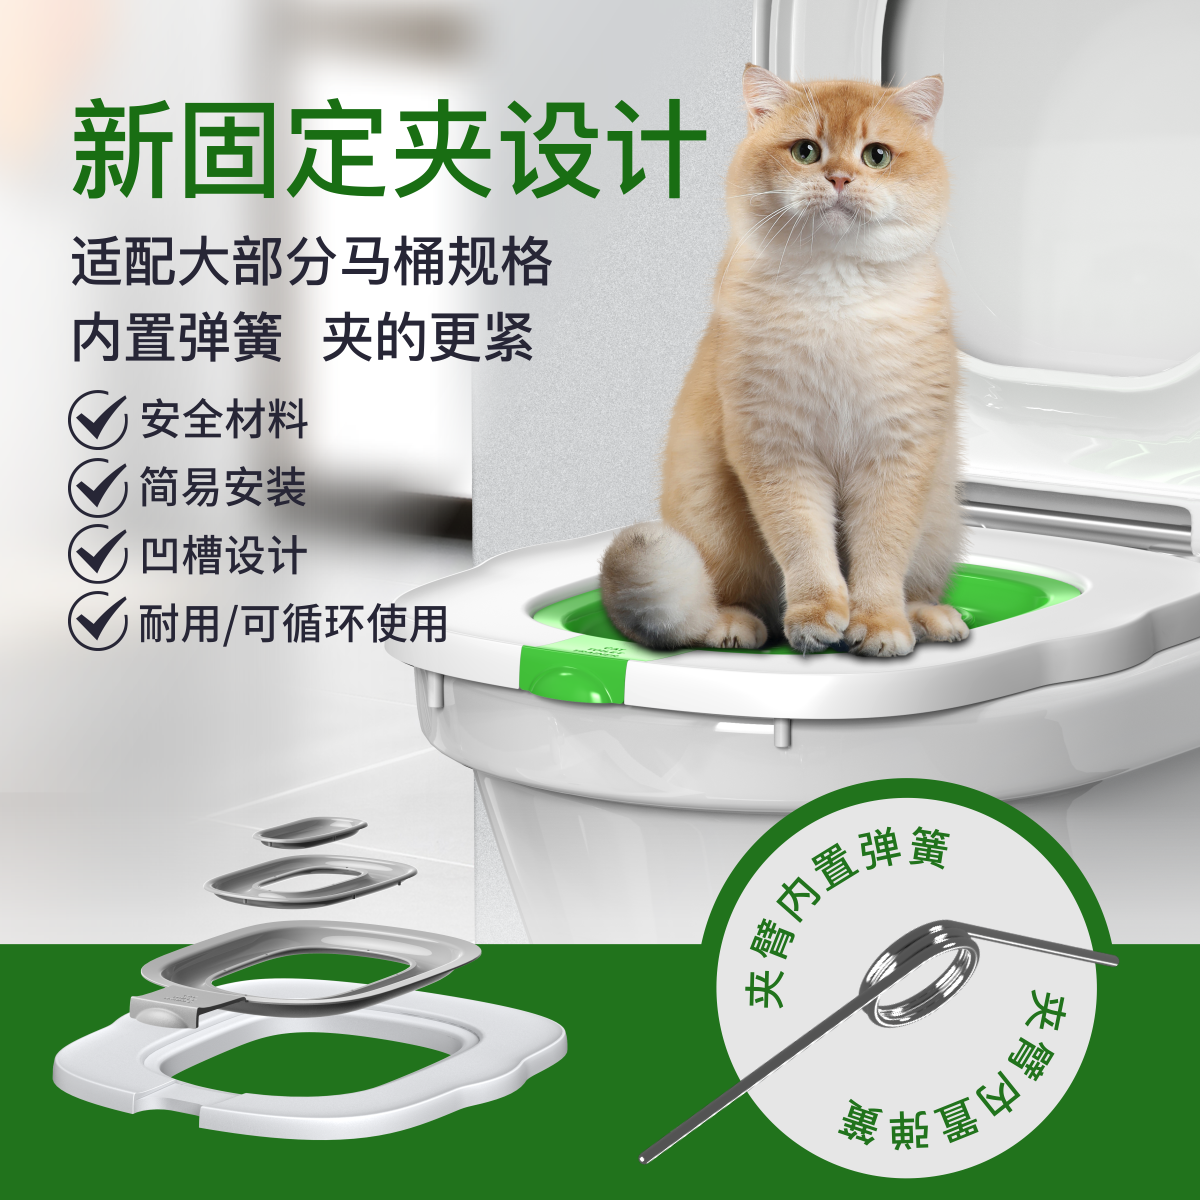 猫砂盘马桶训练器可拆卸循环用上厕所神器 猫咪坐便 猫厕所训练器